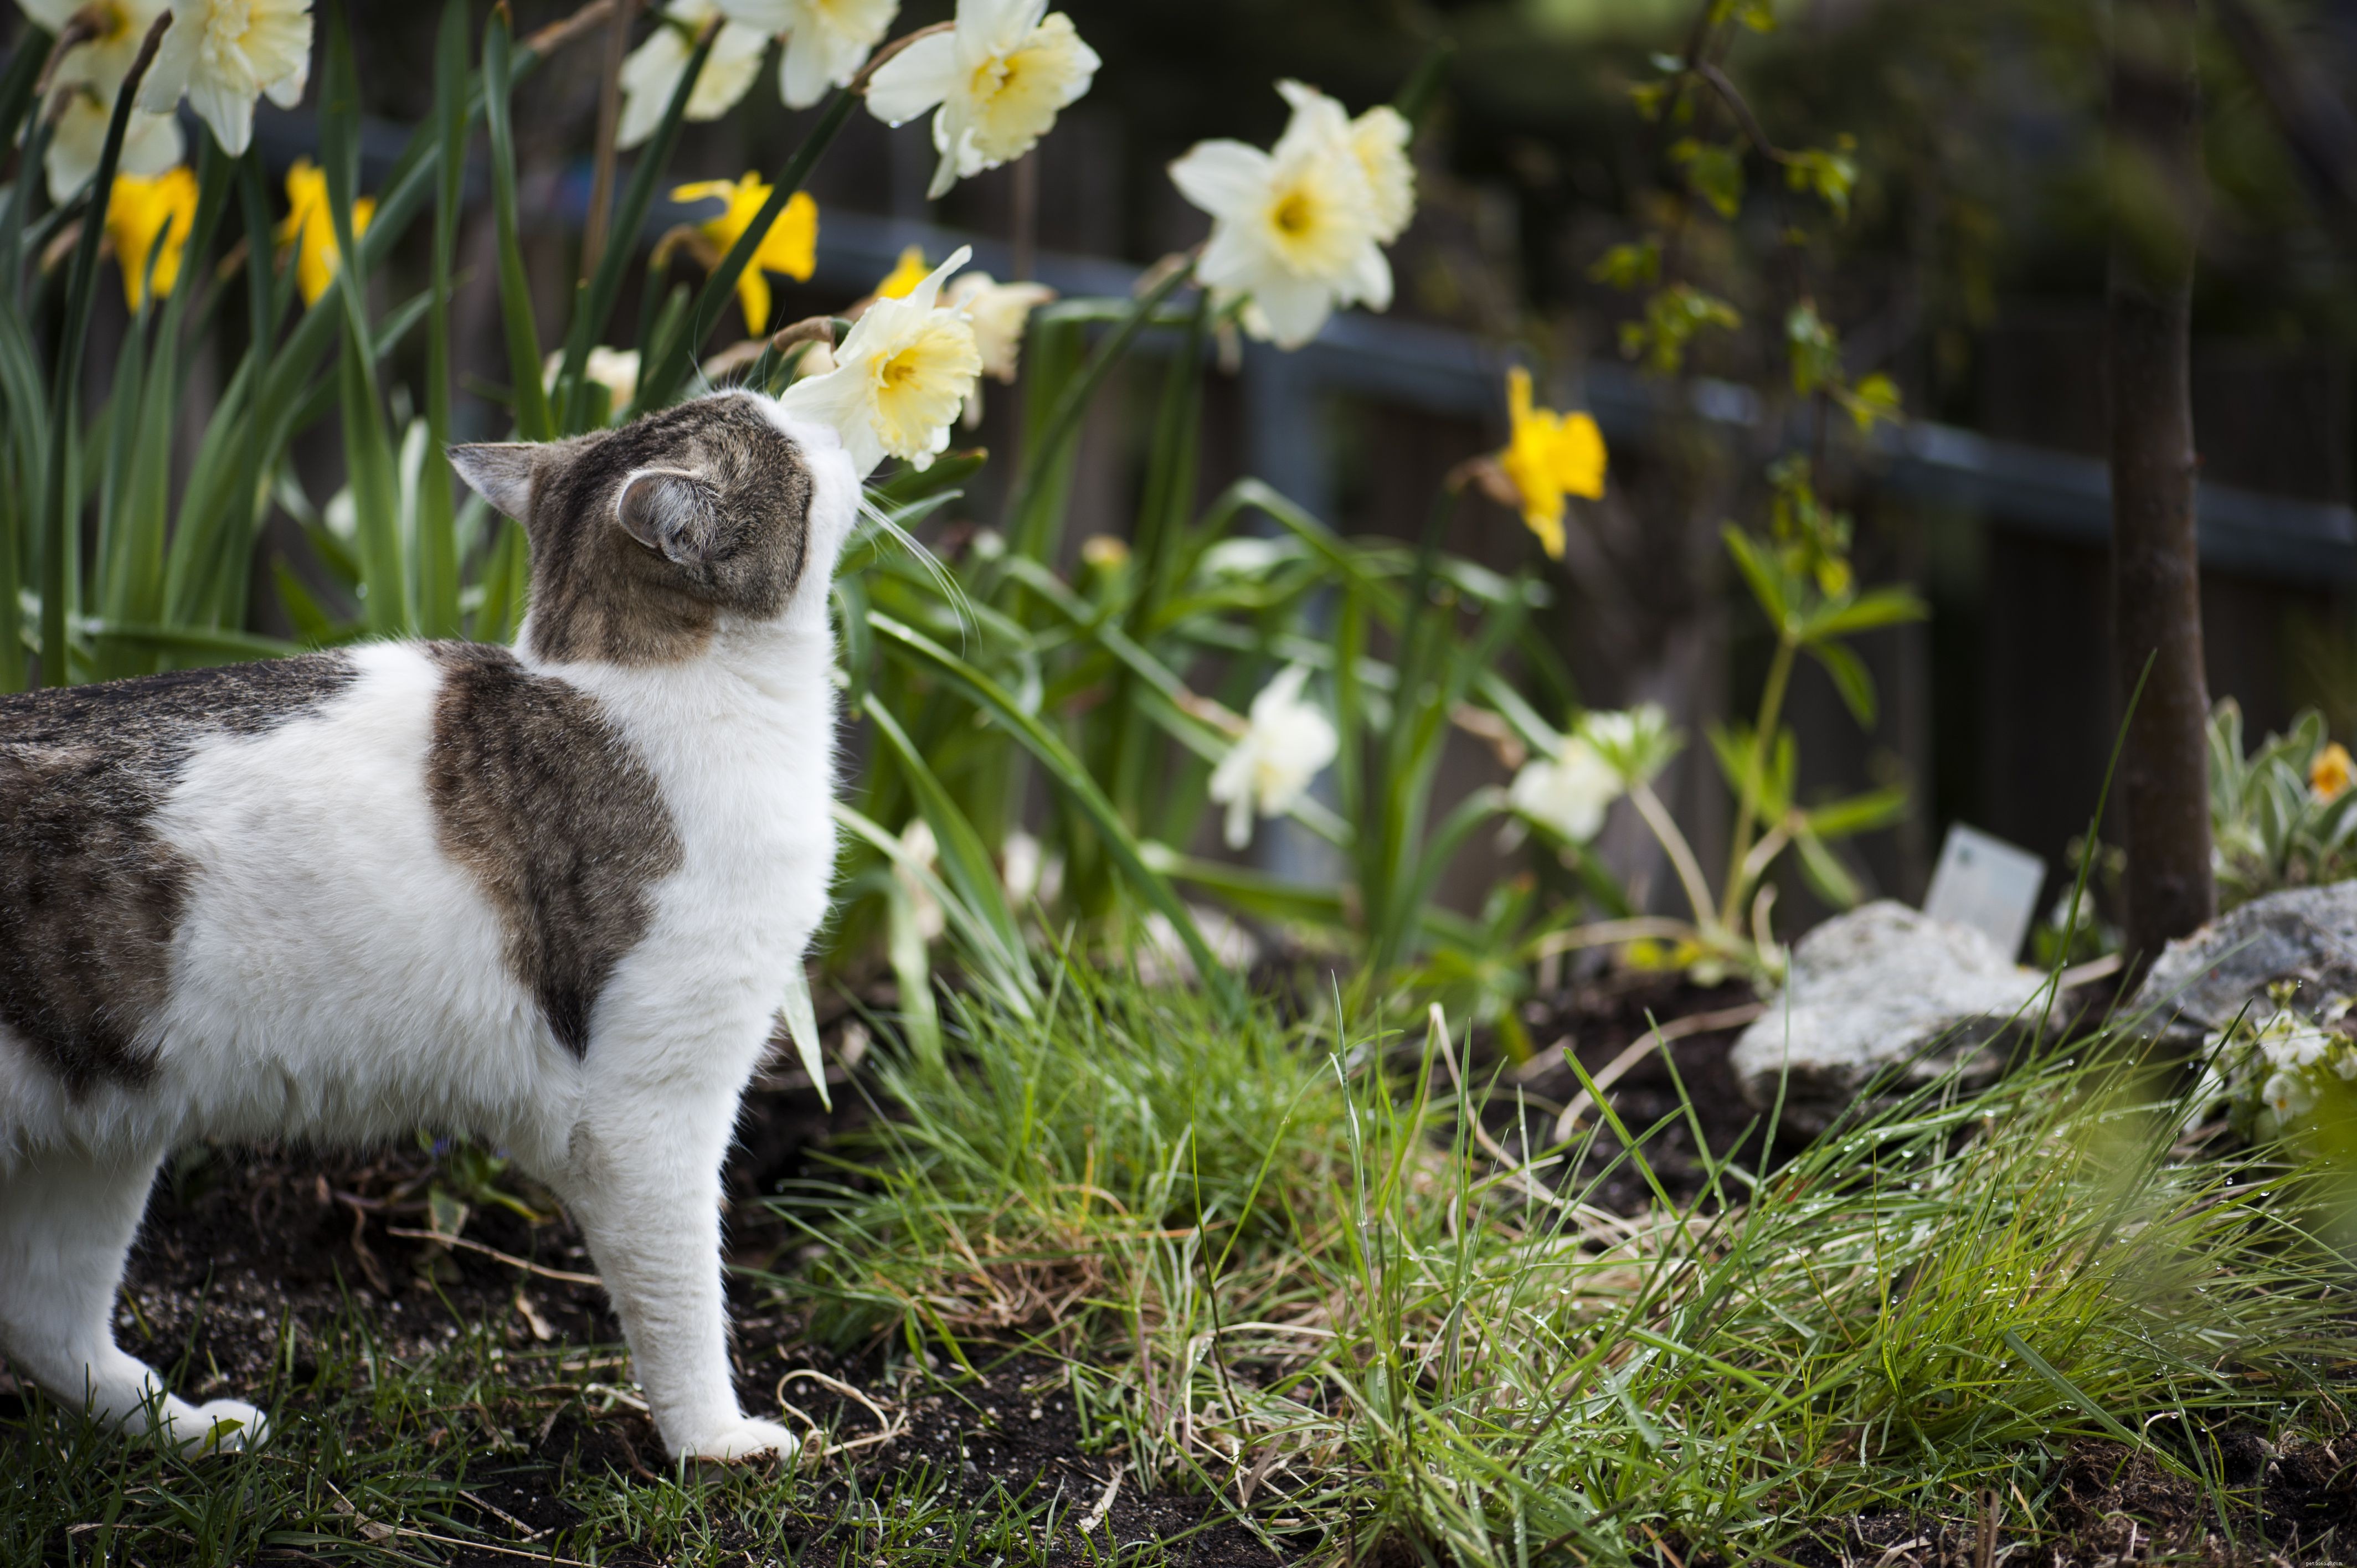 Veelvoorkomende tuinplanten die giftig zijn voor katten